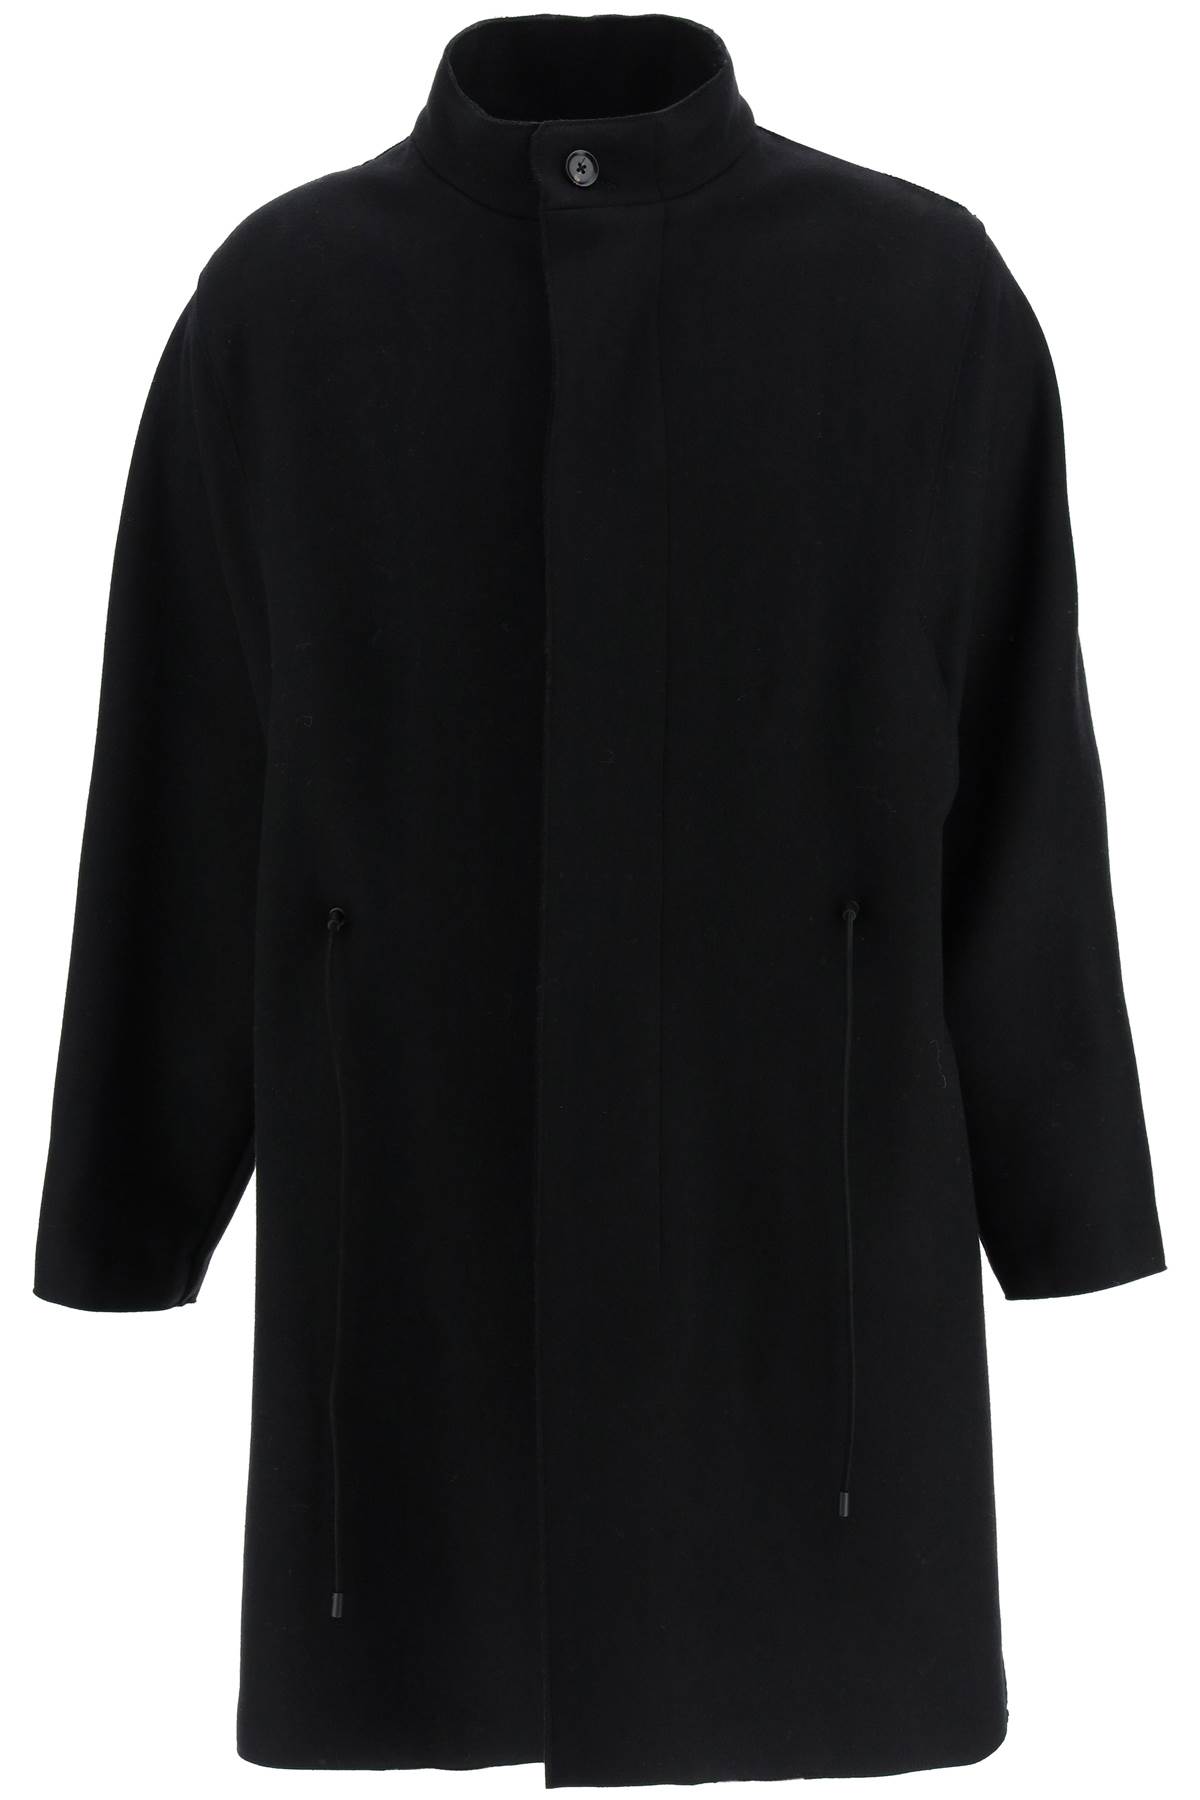 Ermenegildo Zegna Wool Coat With Kimon Collar